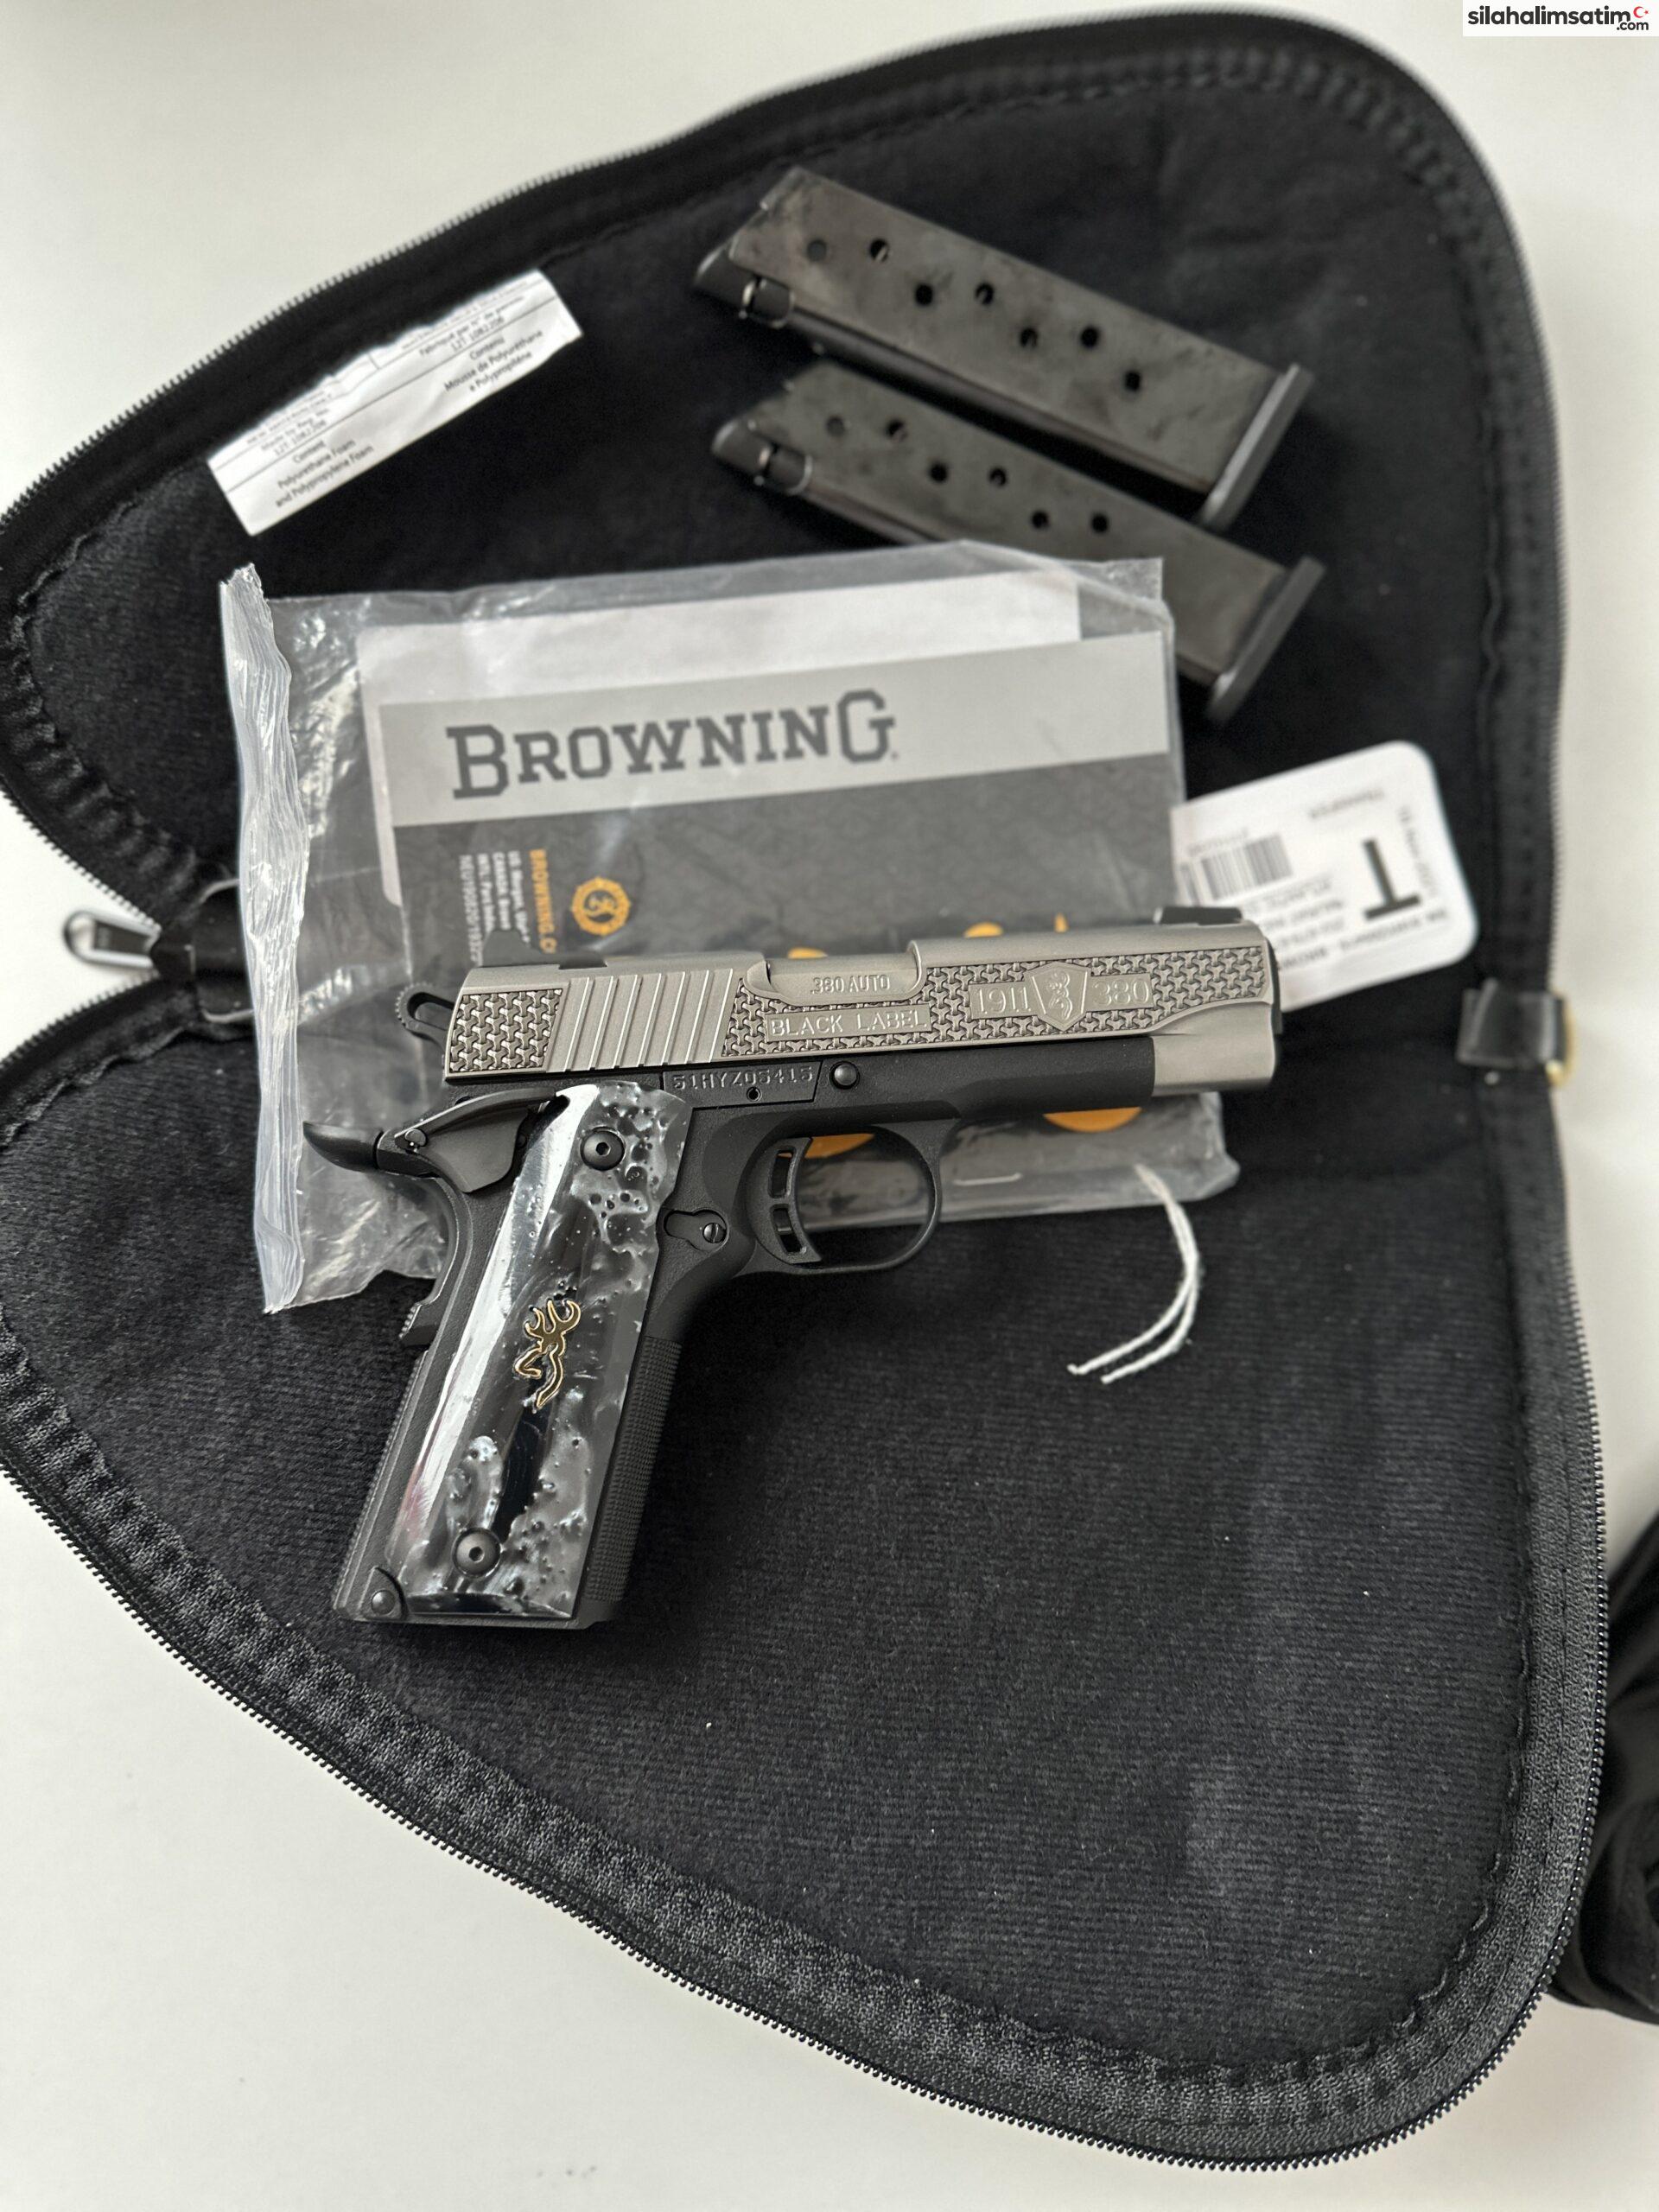 Özel seri özel renk Browning Black label Amerika’dan permi ile getirilmiş.